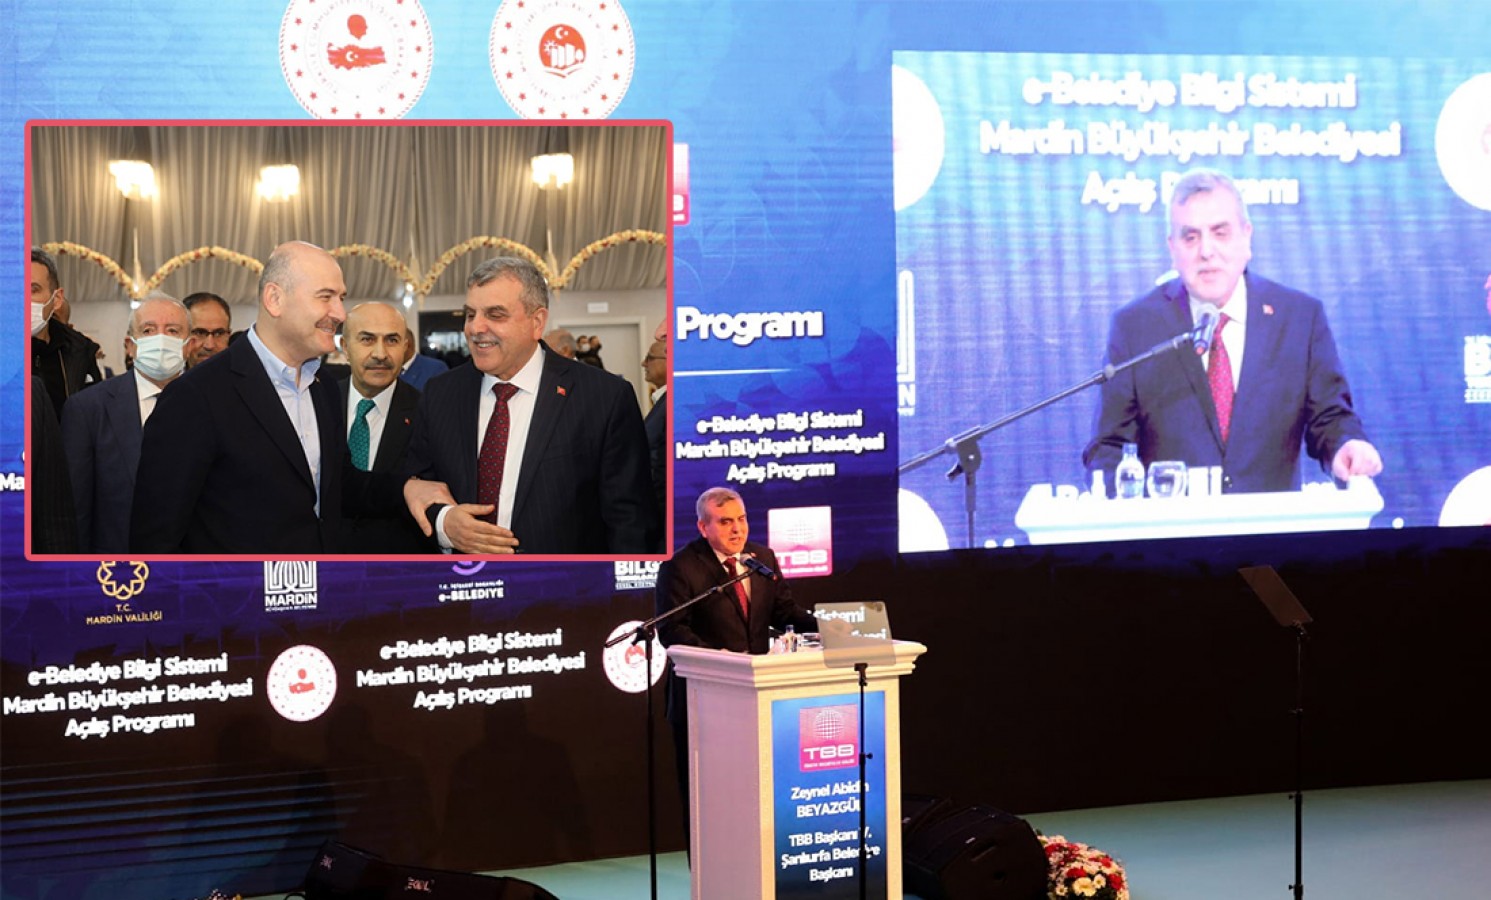 Beyazgül, Mardin’deki e-Belediye gibi sistemi törenine katıldı;